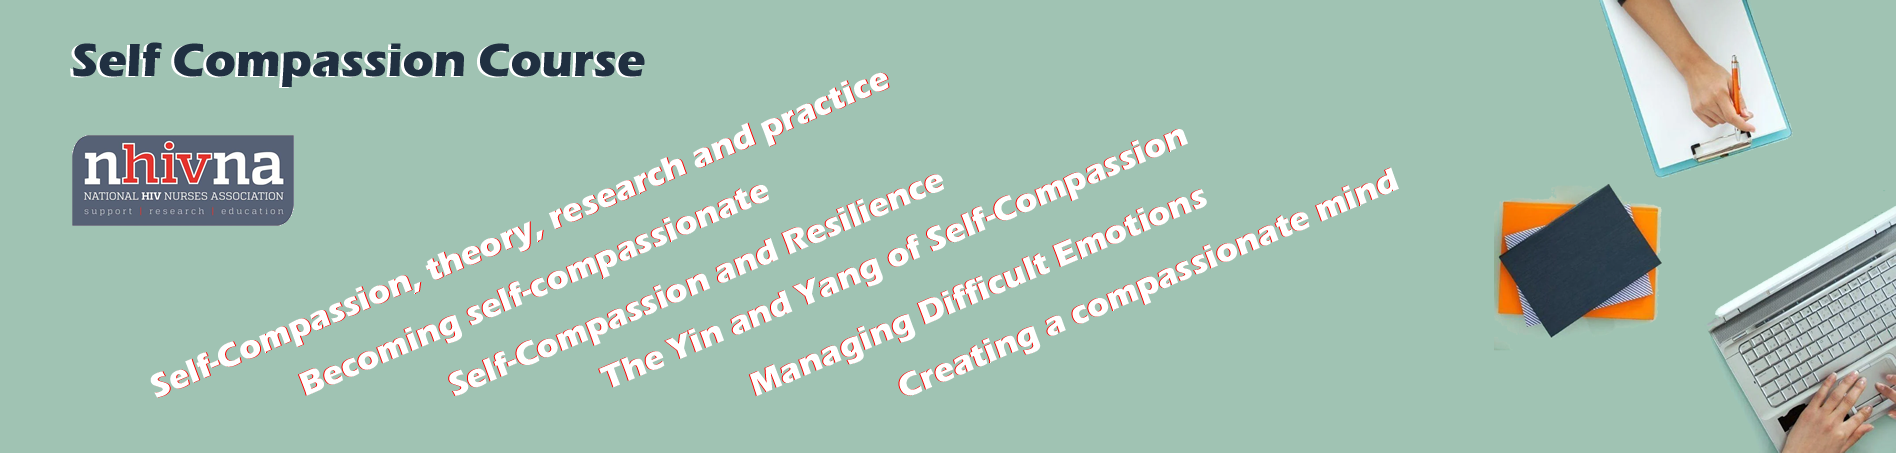 Self Compassion Course